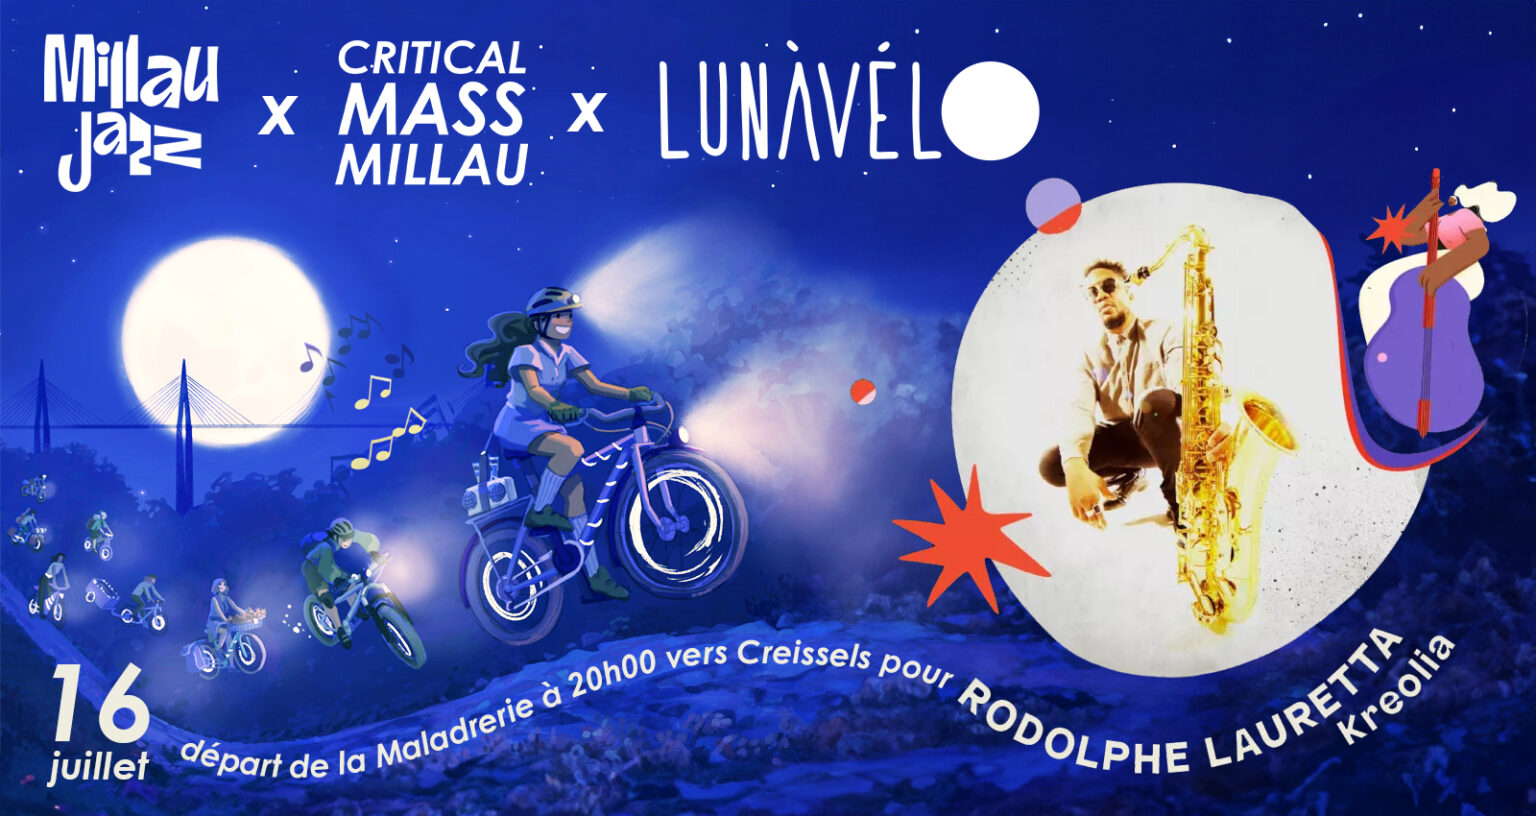 Départ à Vélo vers le concert de Rodolphe Lauretta pour le Millau Jazz Festival. Départ à 20H de laa Maladrerie.